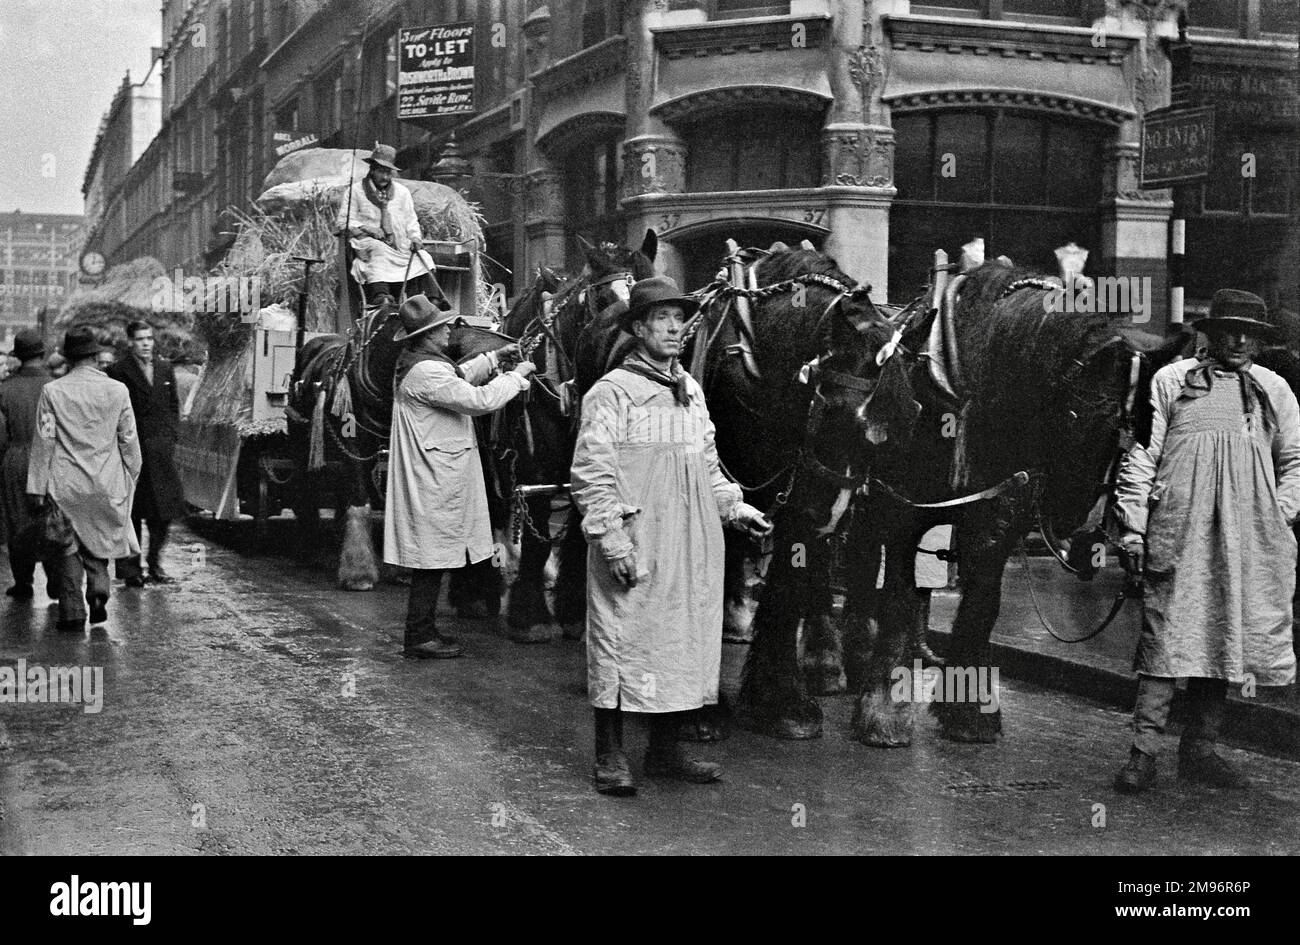 Landsleute in Kittel, mit haycart und Pferden, in einer Londoner Straße. Stockfoto